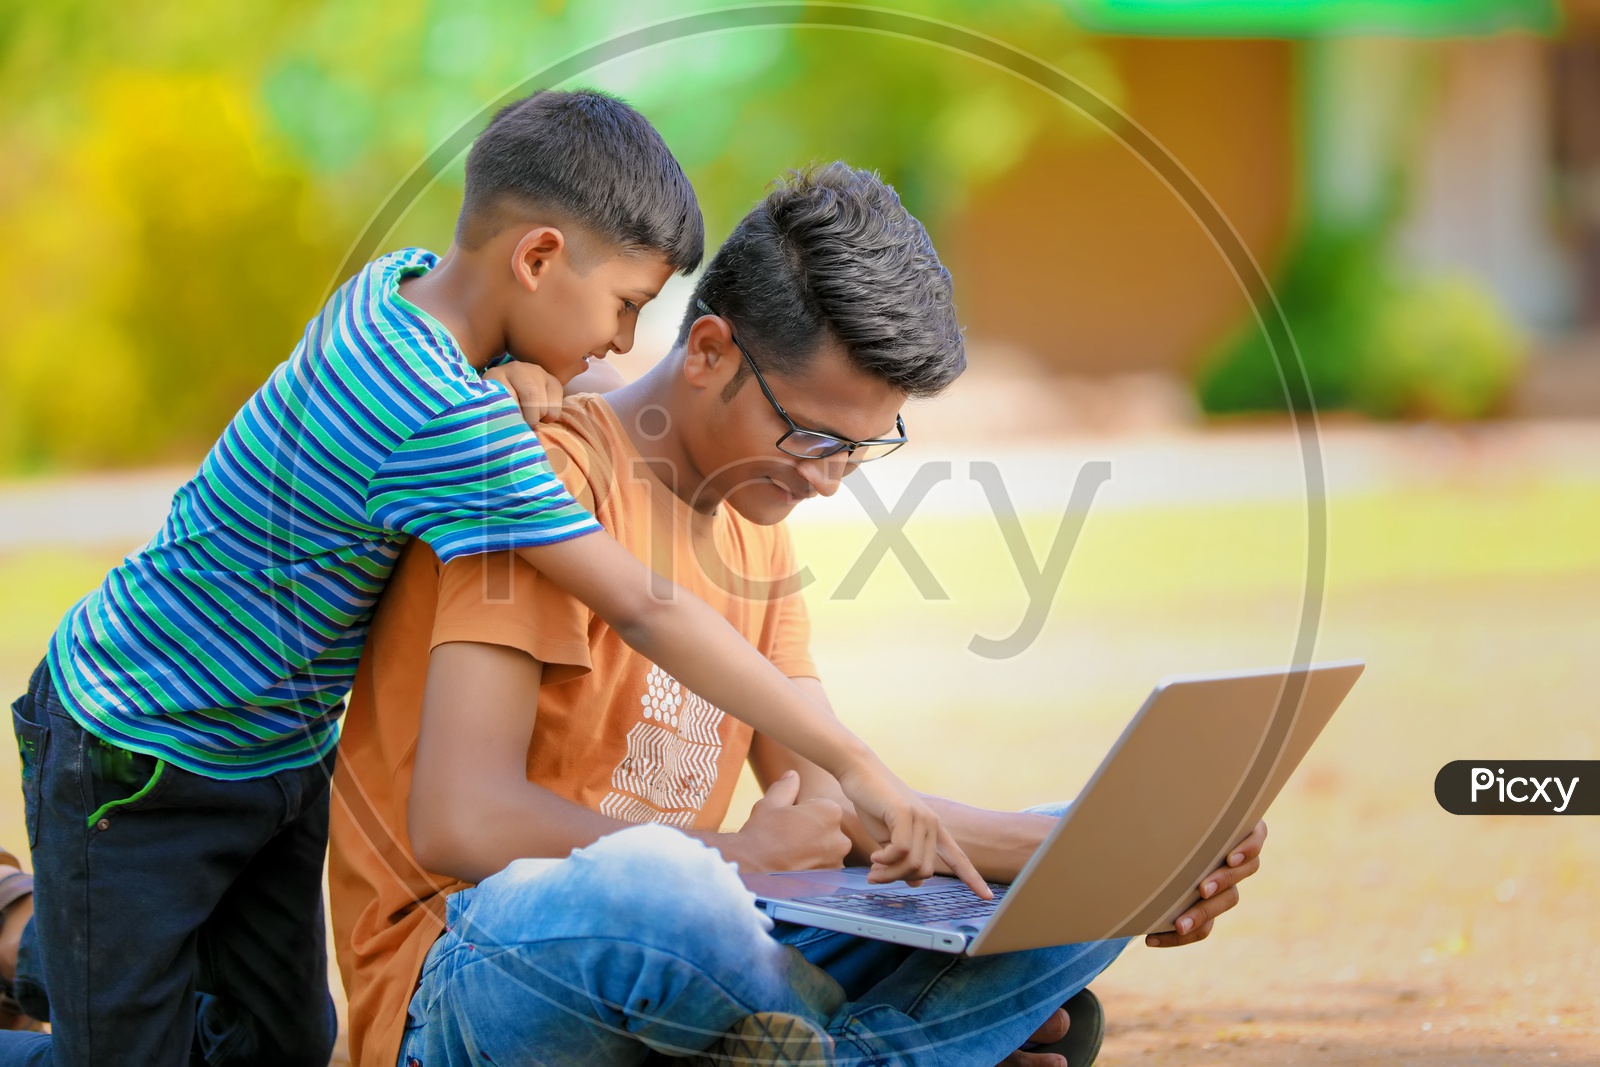 Indian School Children using Laptop